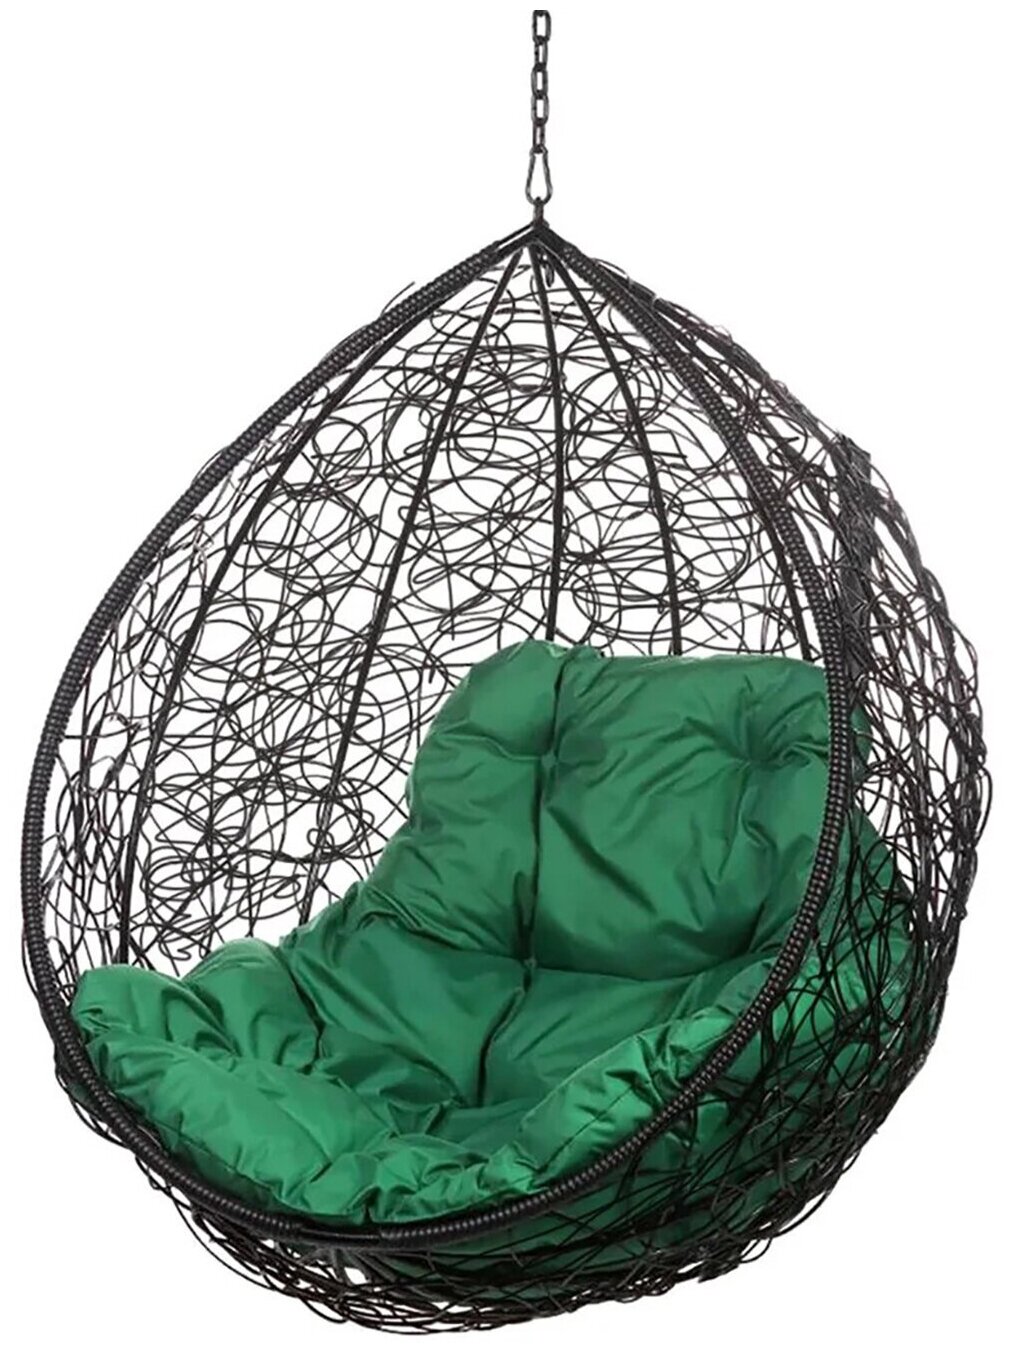 Кресло подвесное "Tropica", черное, без стойки, зеленая подушка